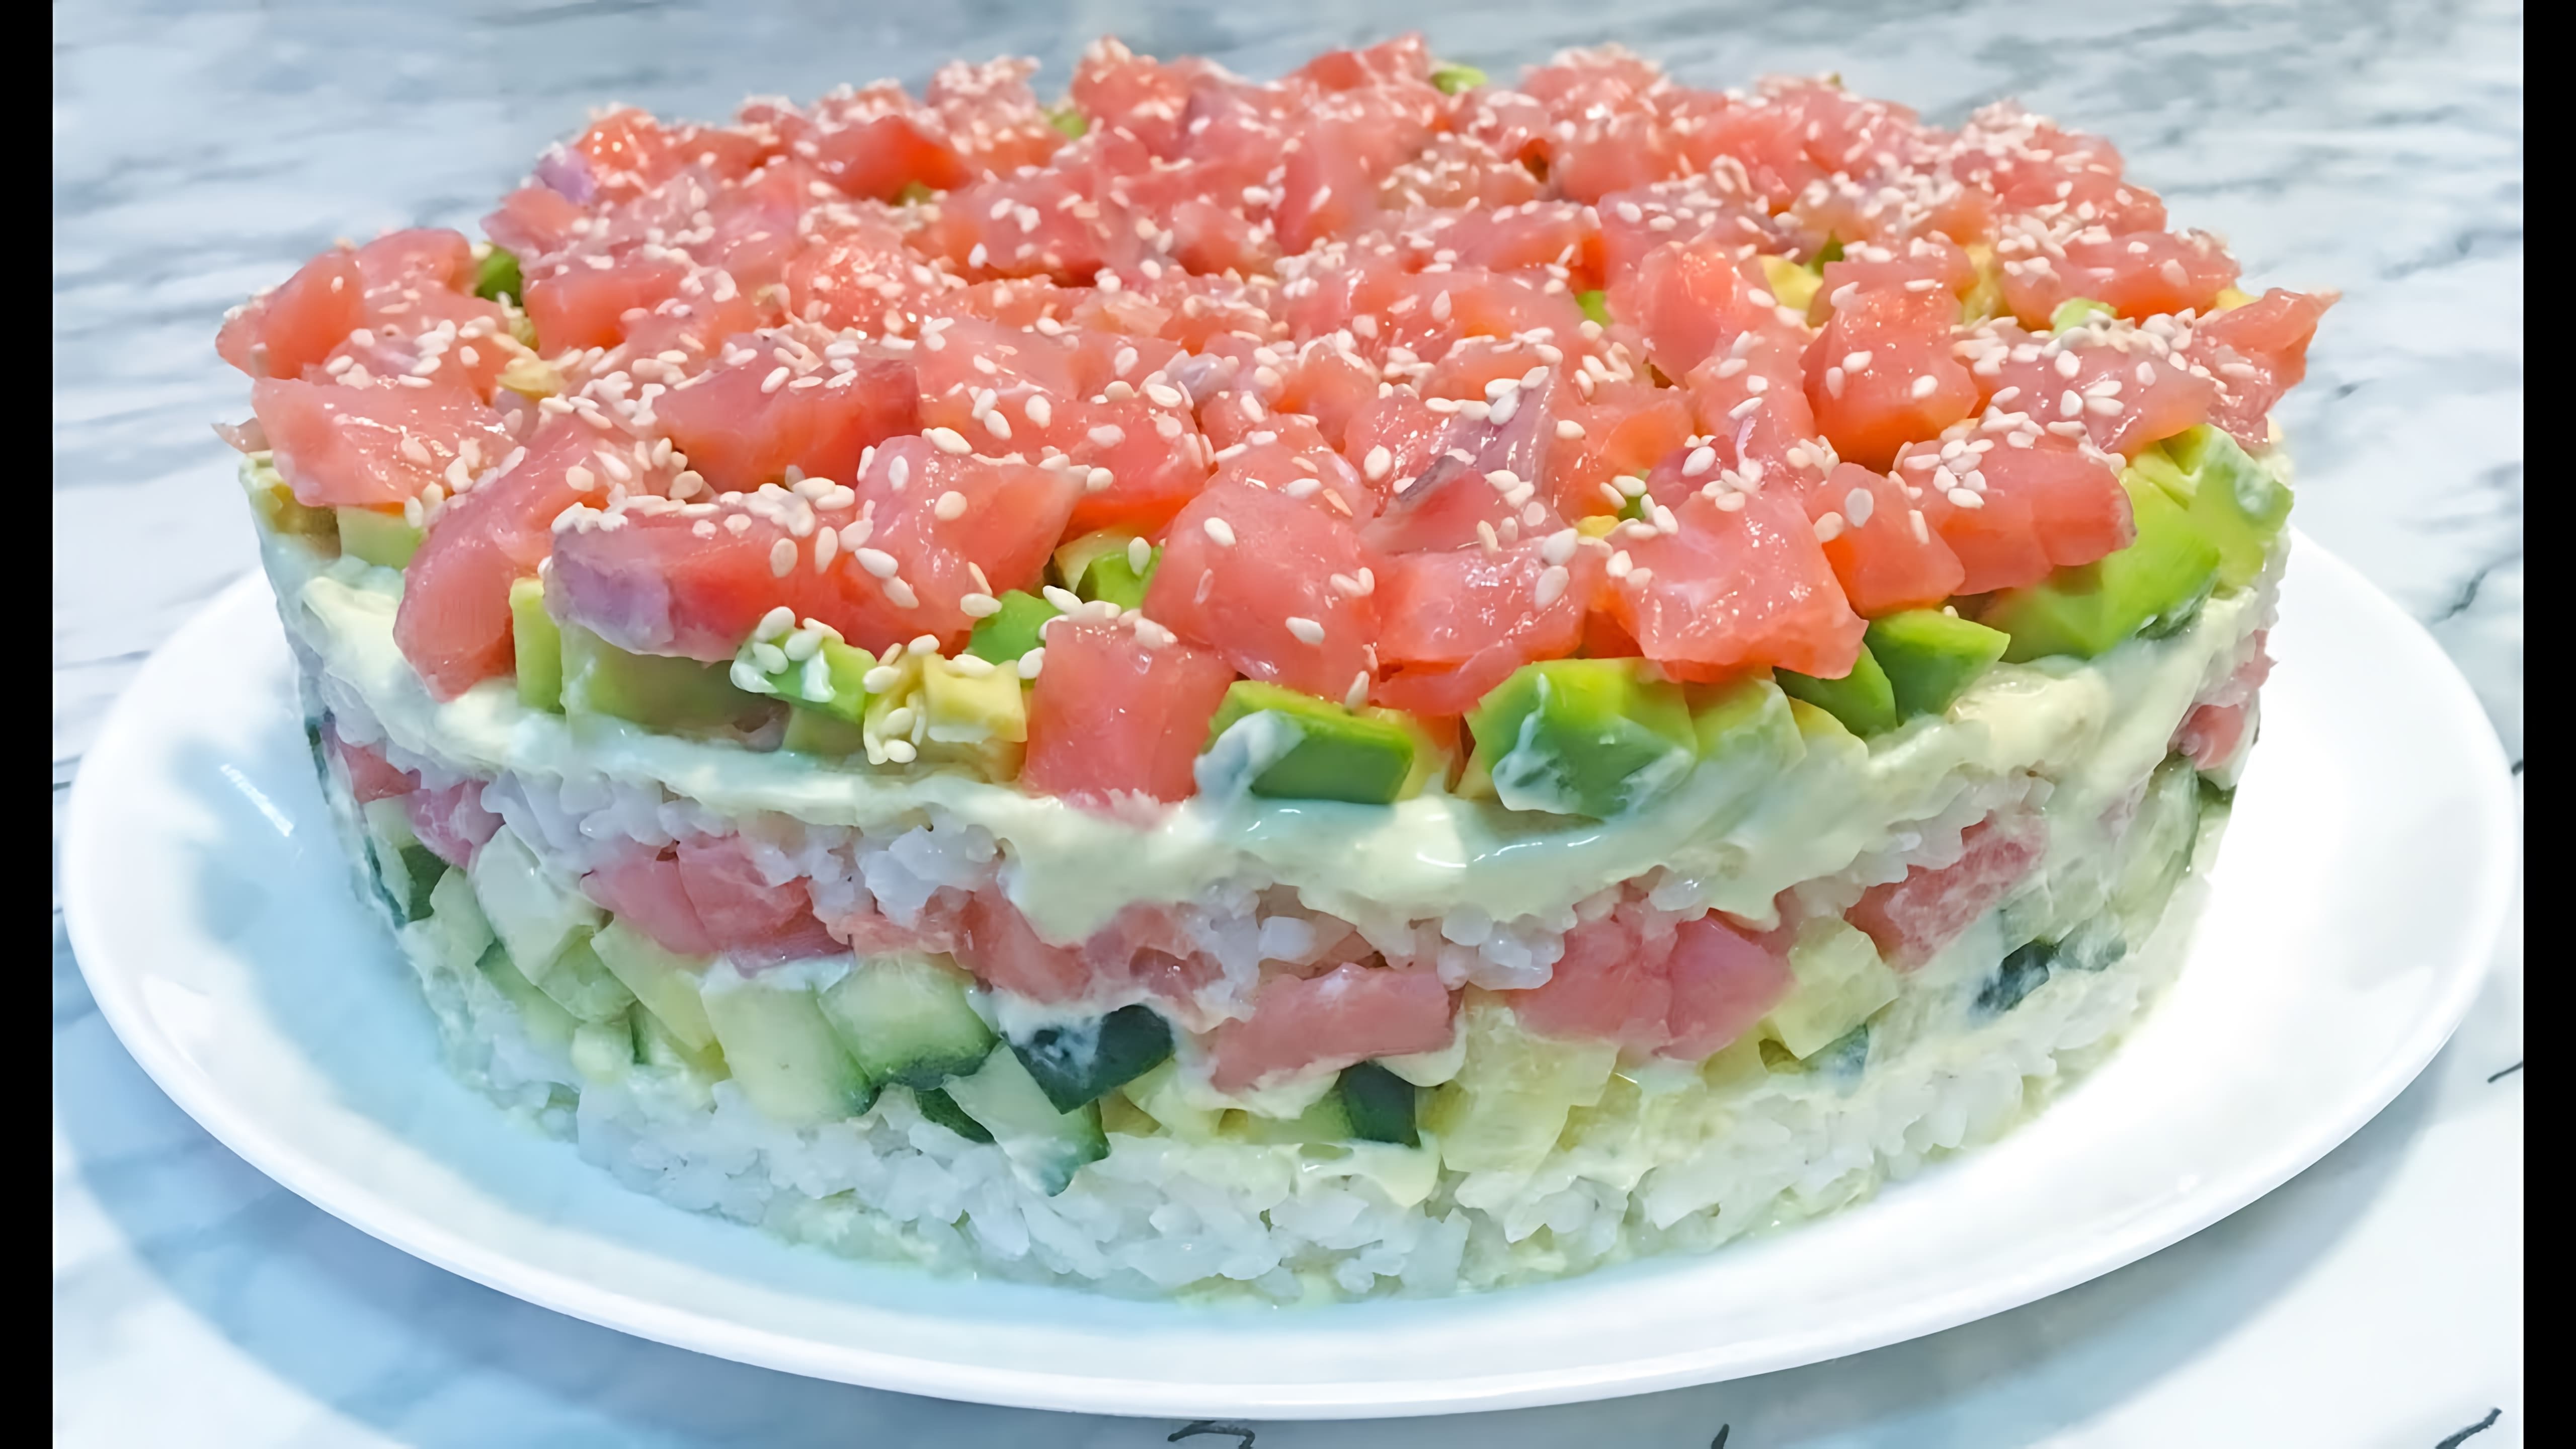 В этом видео демонстрируется процесс приготовления салата "Суши"